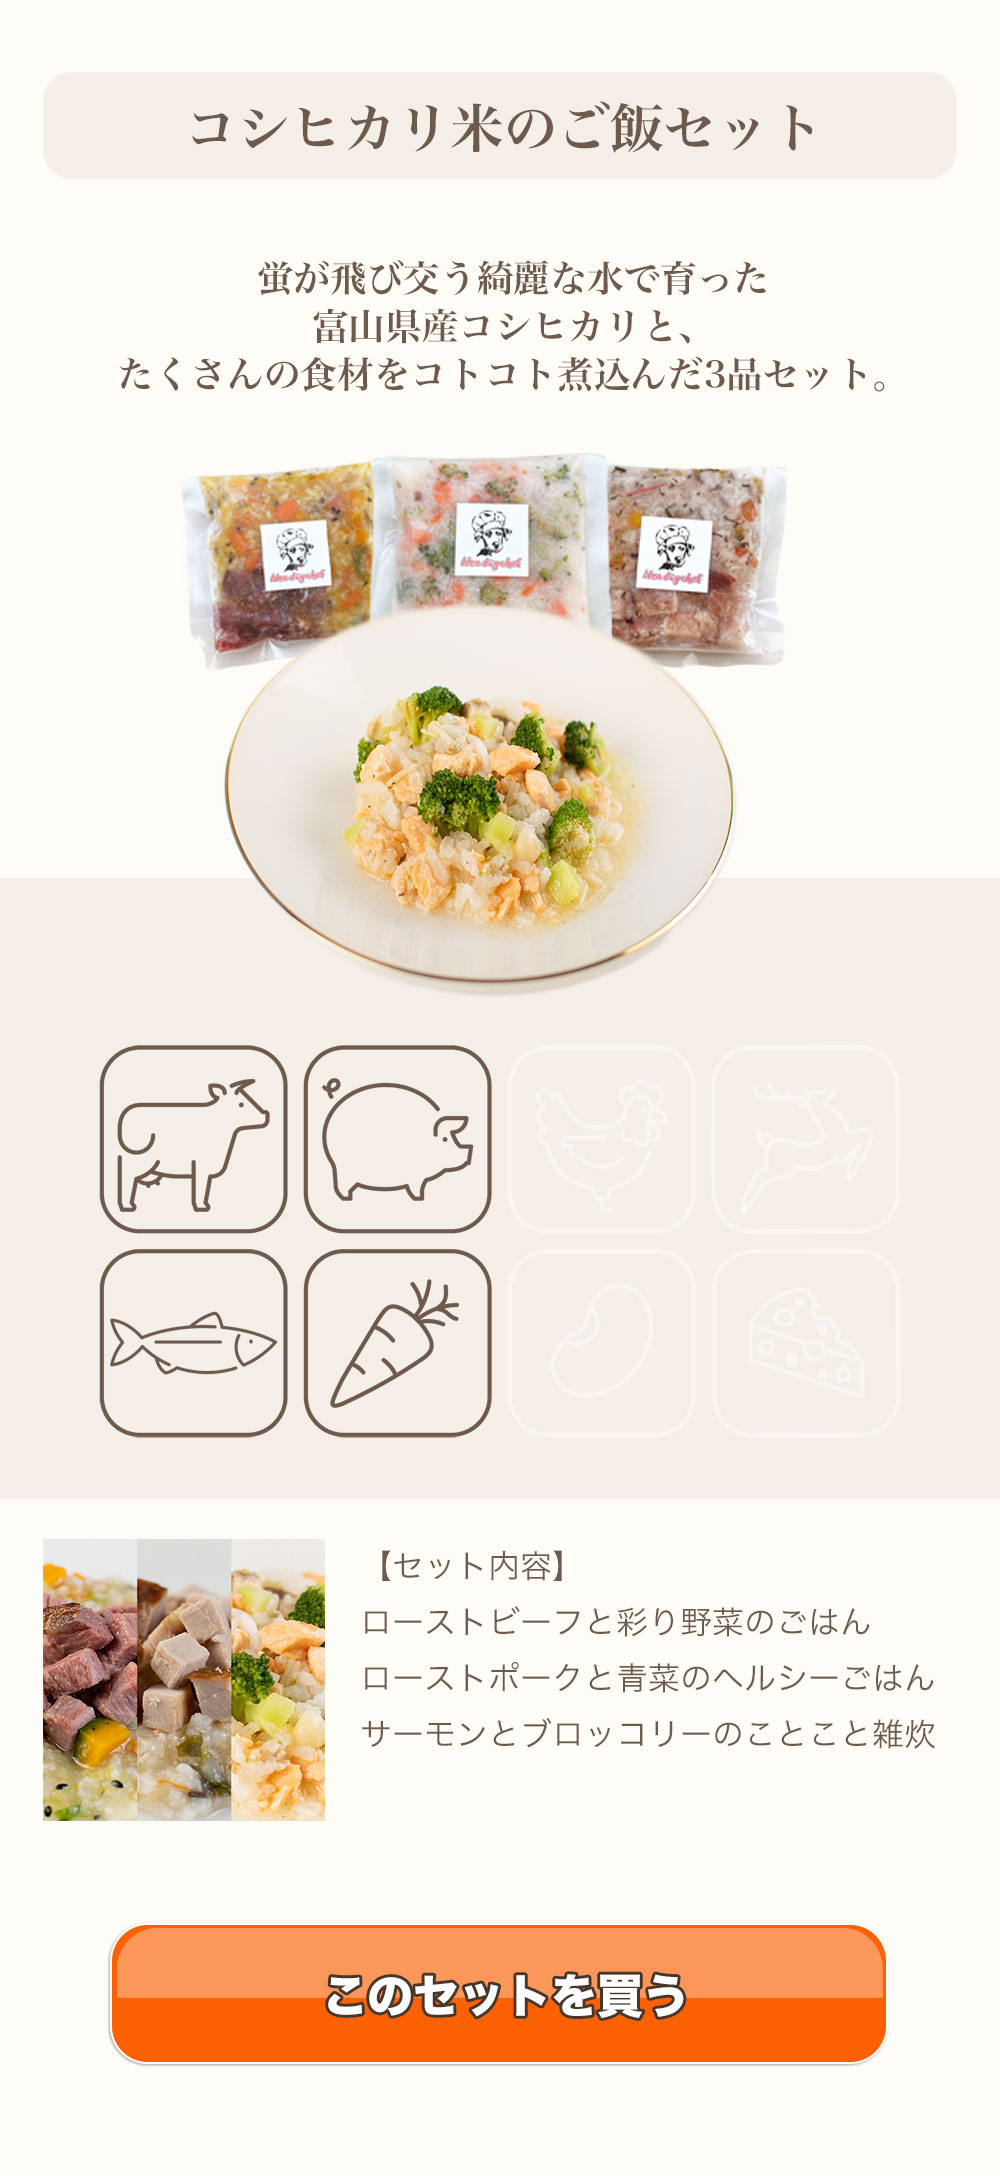 犬用コシヒカリ米のご飯セット